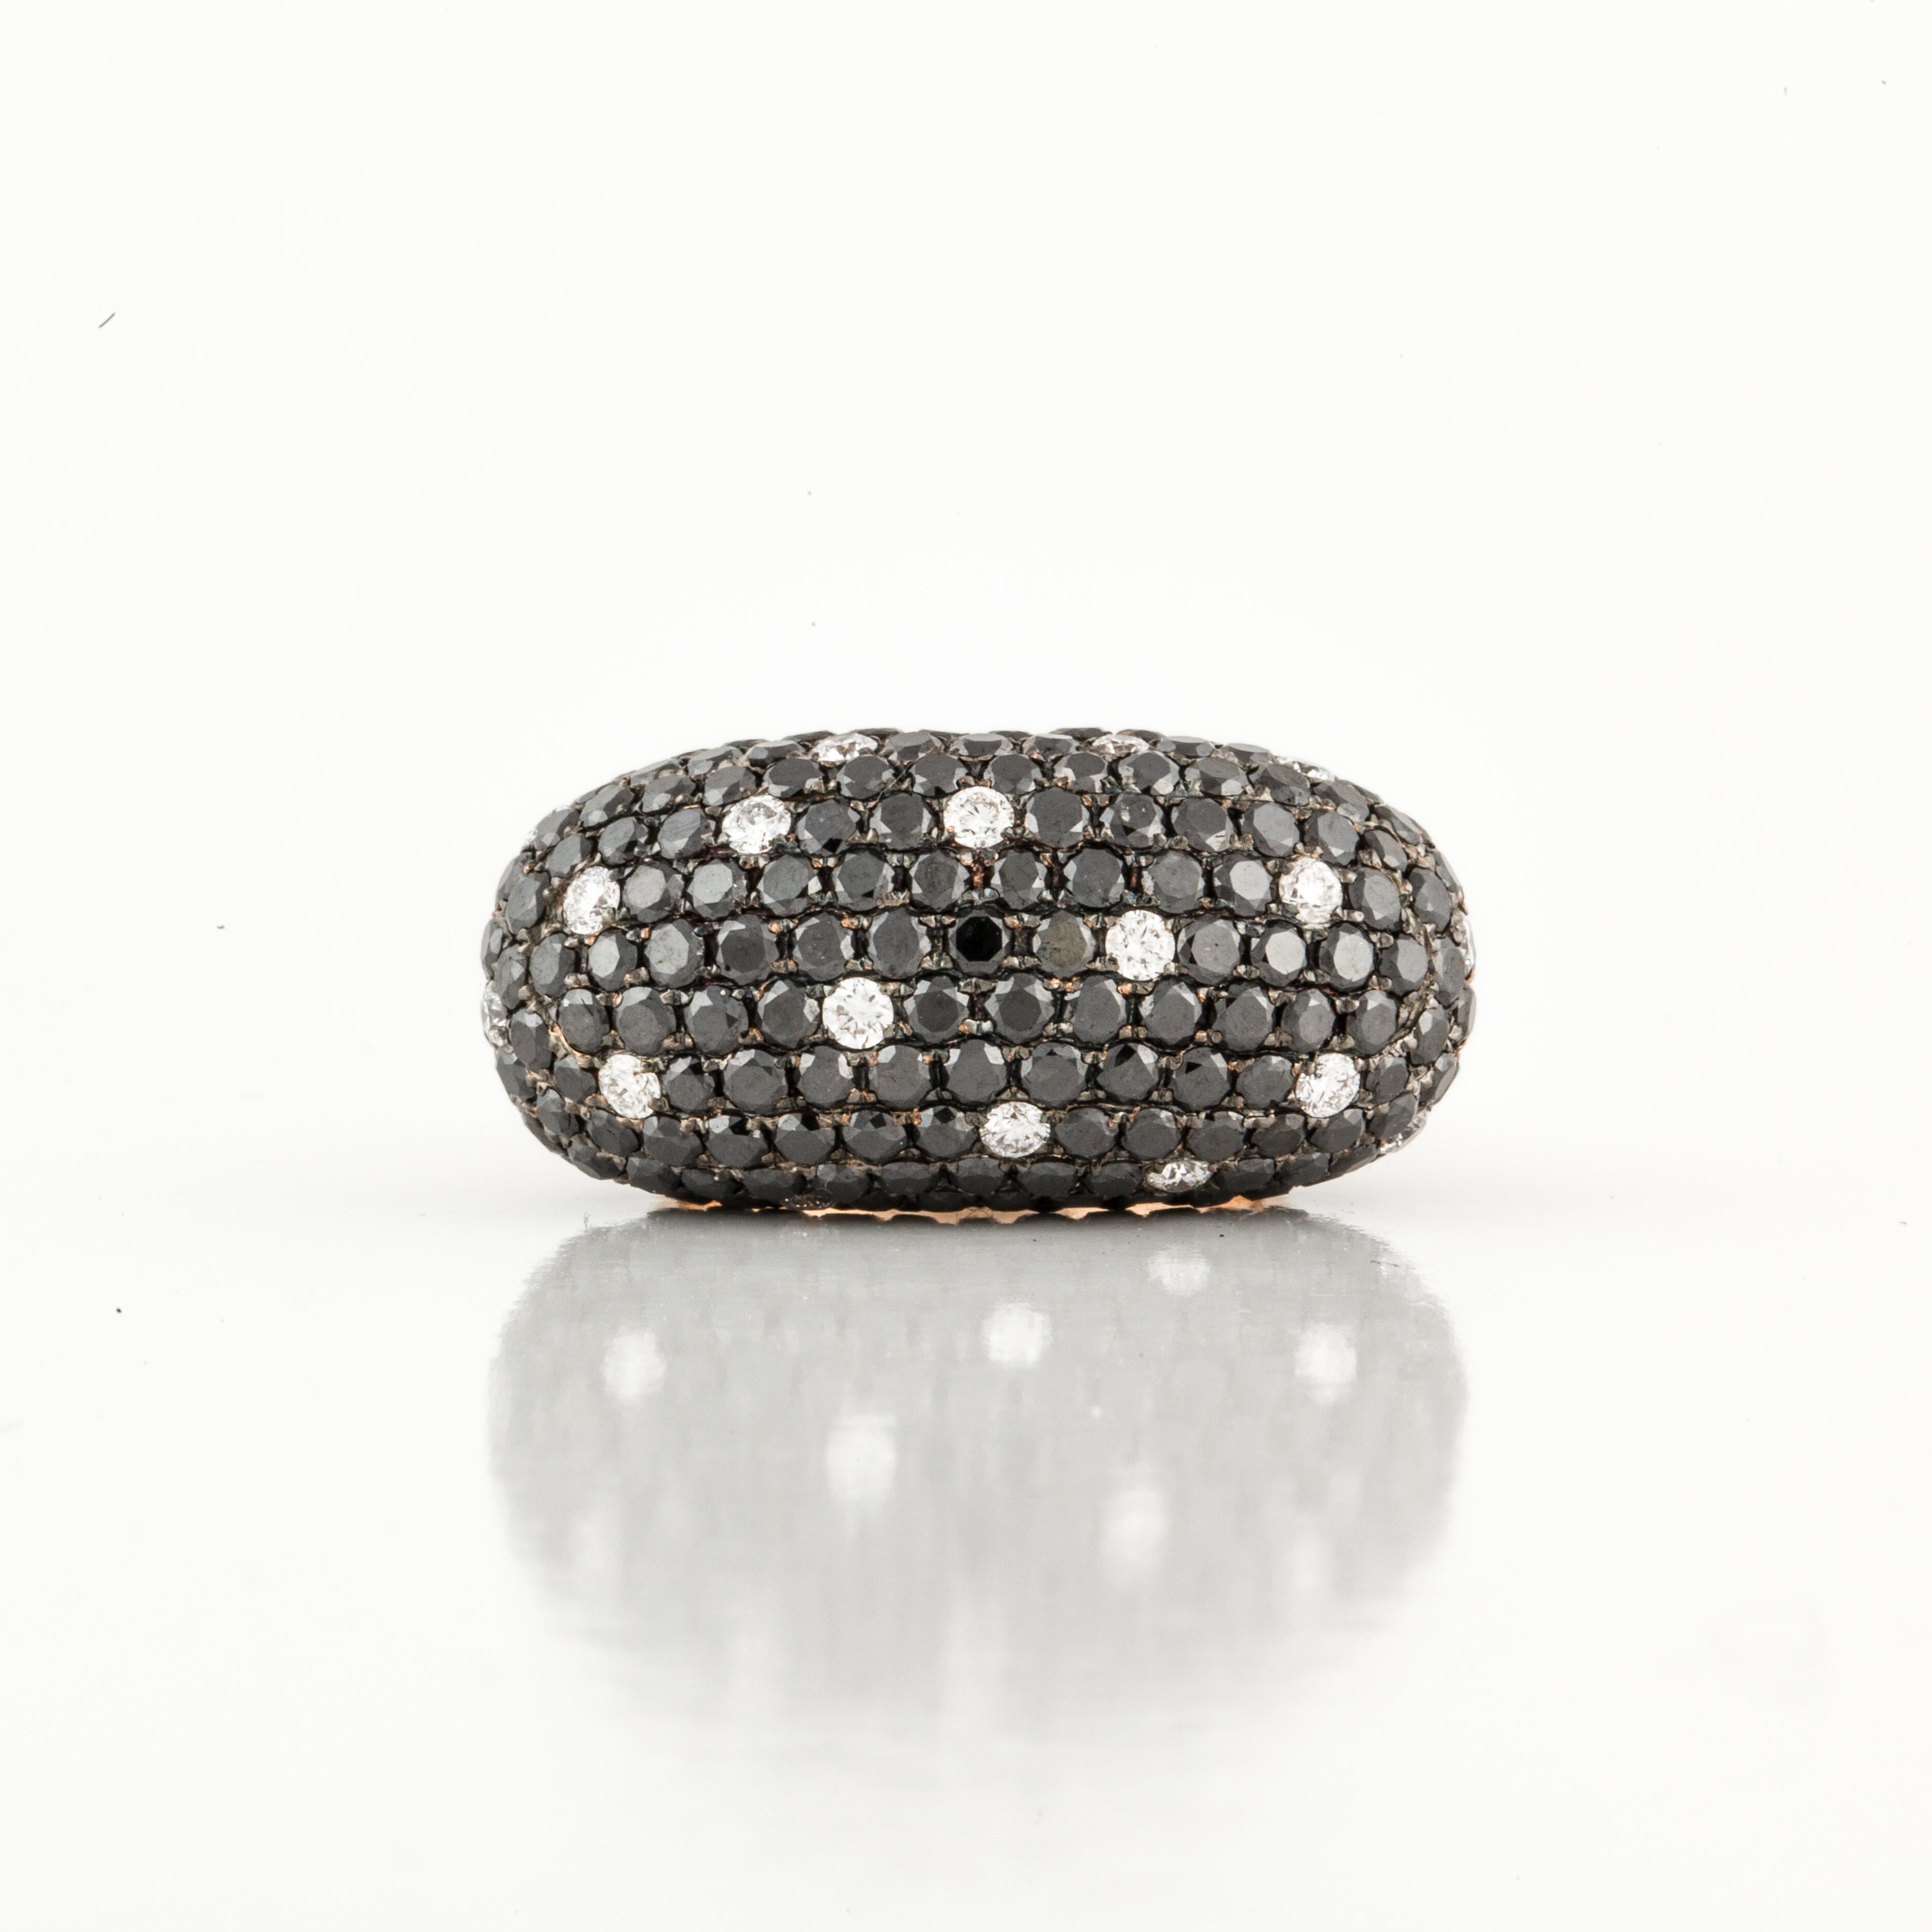 Ring aus 18 Karat Roségold mit schwarzen und weißen Diamanten in Pavé-Fassung.  Es gibt 26 runde Diamanten von insgesamt 2,10 Karat, Farbe G-H und Reinheit VS1-2.  Außerdem sind 208 runde schwarze Diamanten von insgesamt 7 Karat enthalten.   Das